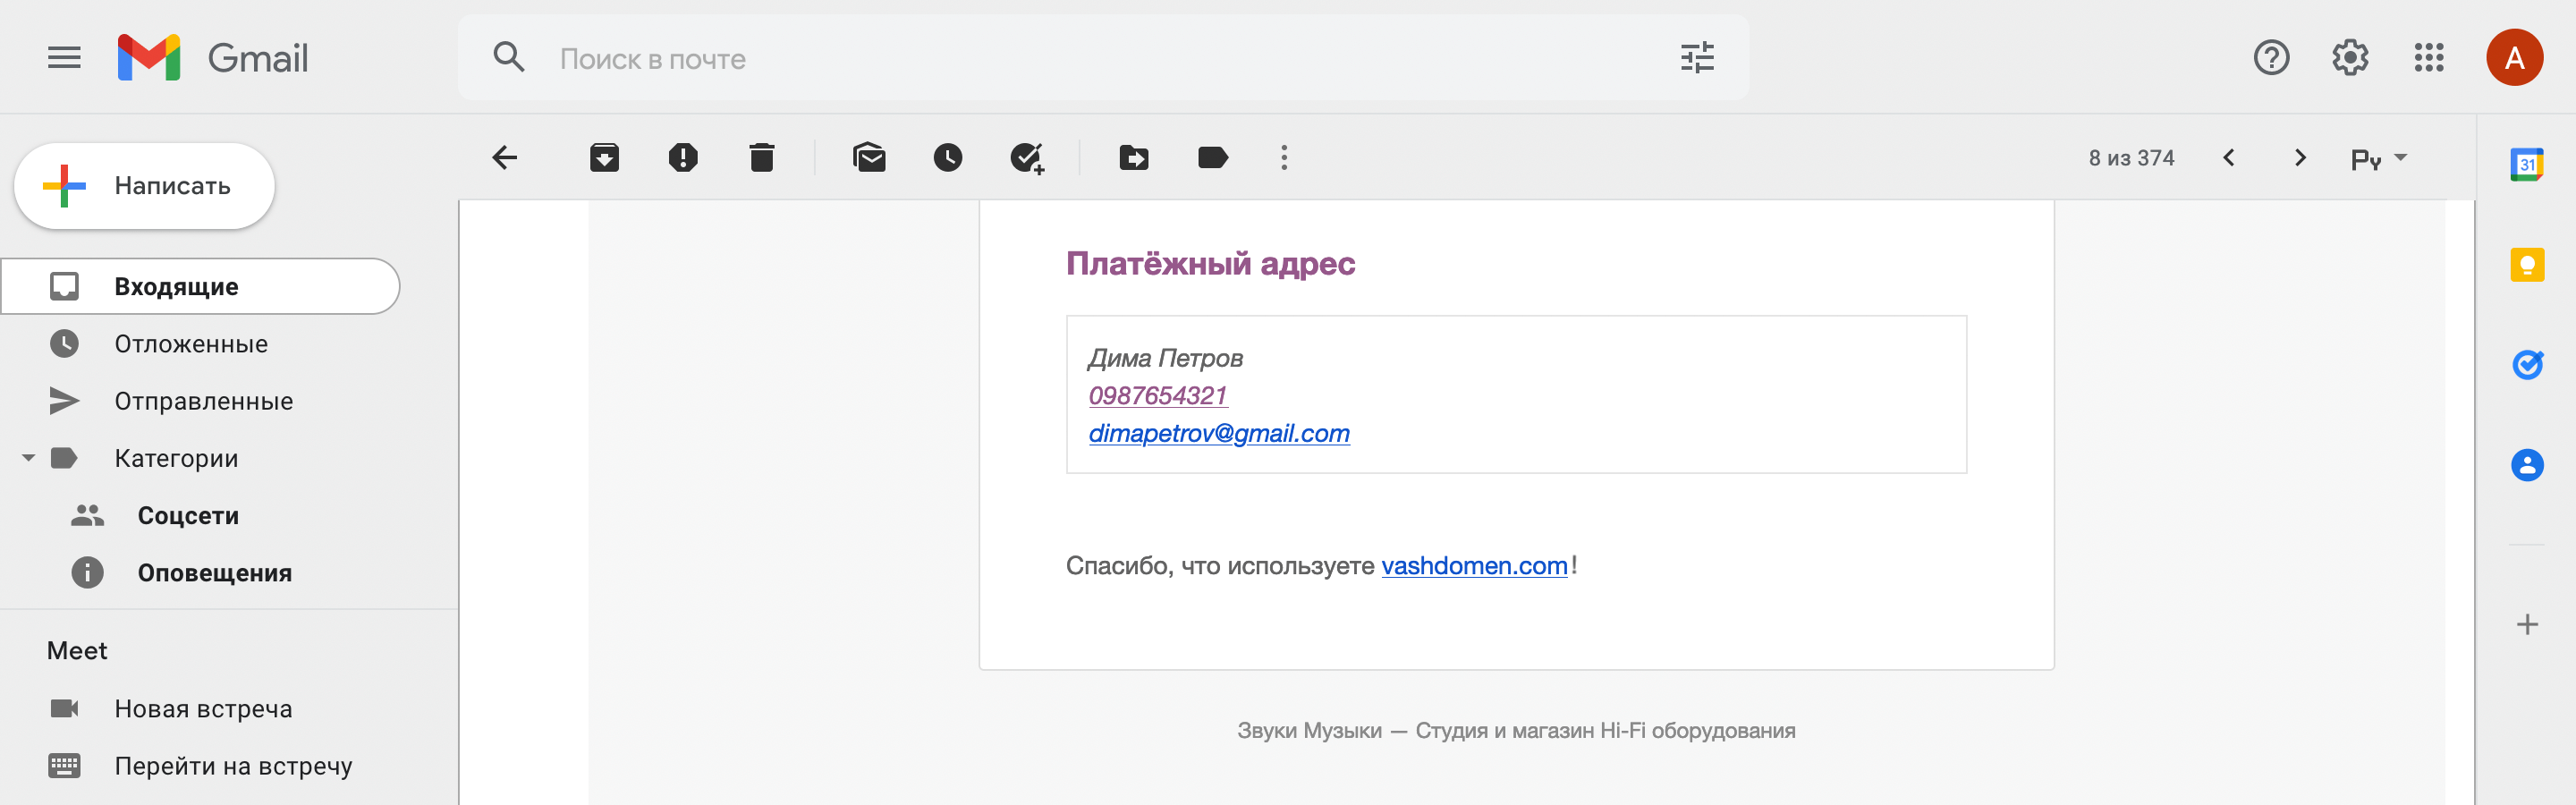 Параметры из блока «Email шаблон» в уведомлении от WooCommerce в Gmail